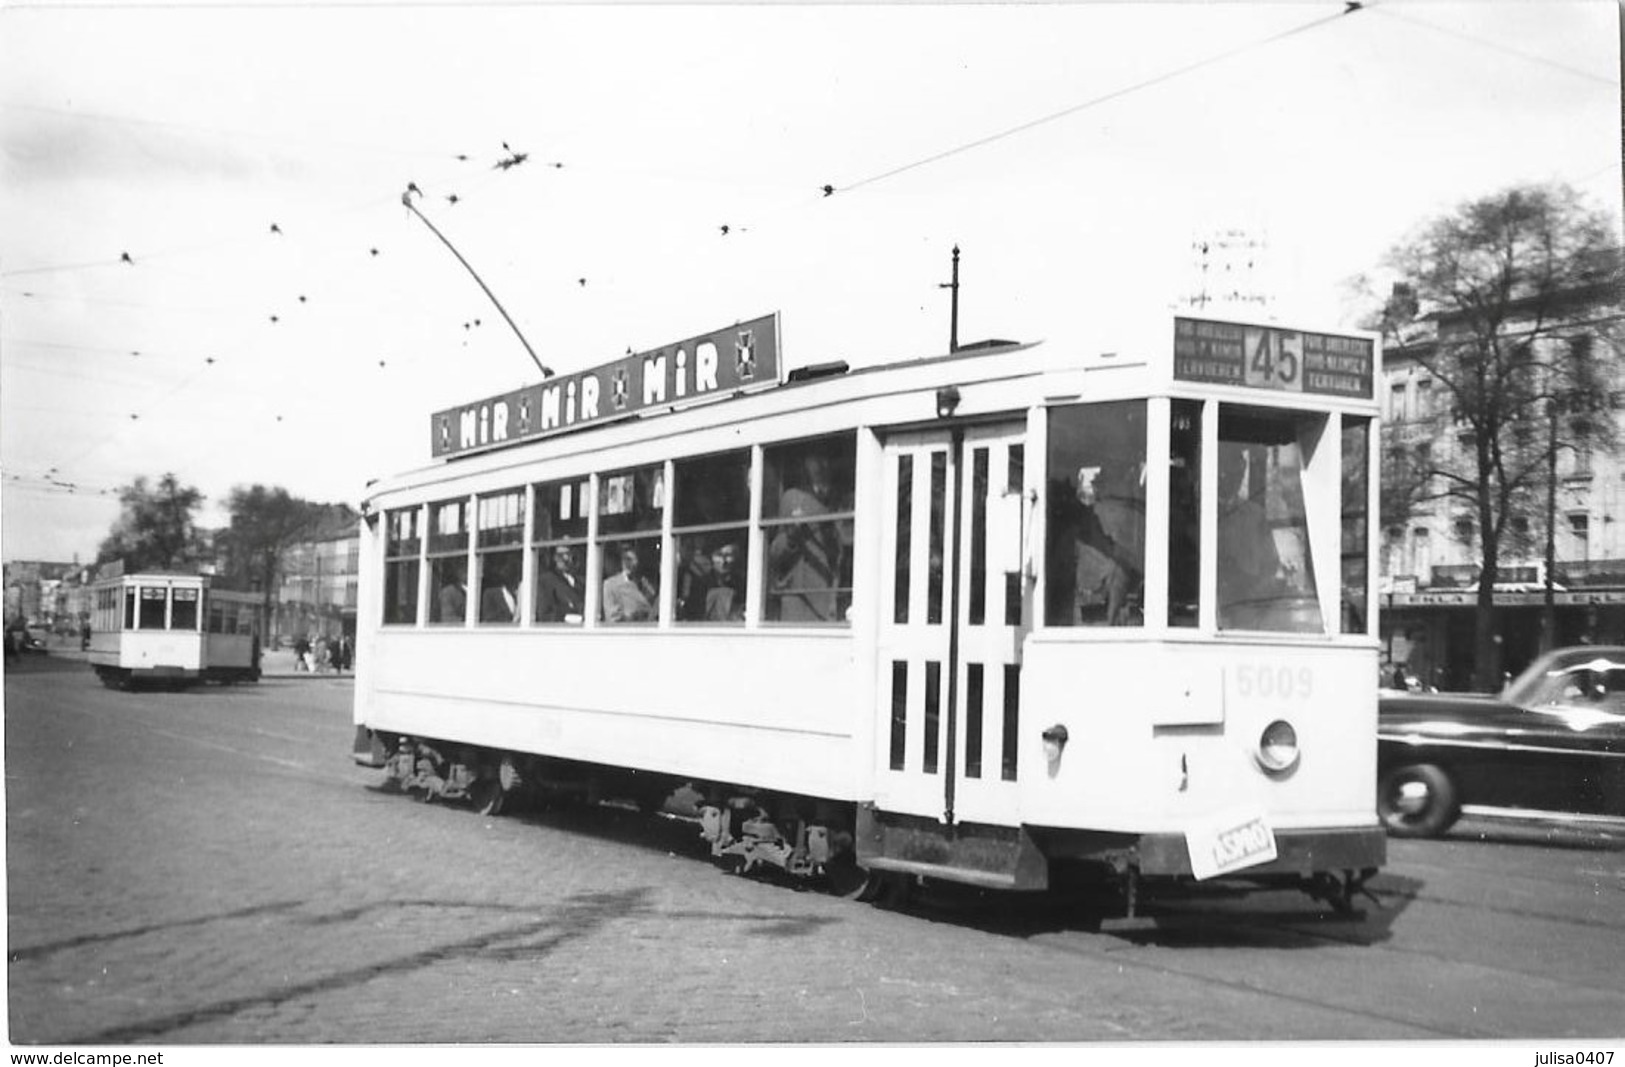 BRUXELLES (Belgique) Photographie Format Cpa Tramway électrique Place De La Constitution 1950 - Vervoer (openbaar)